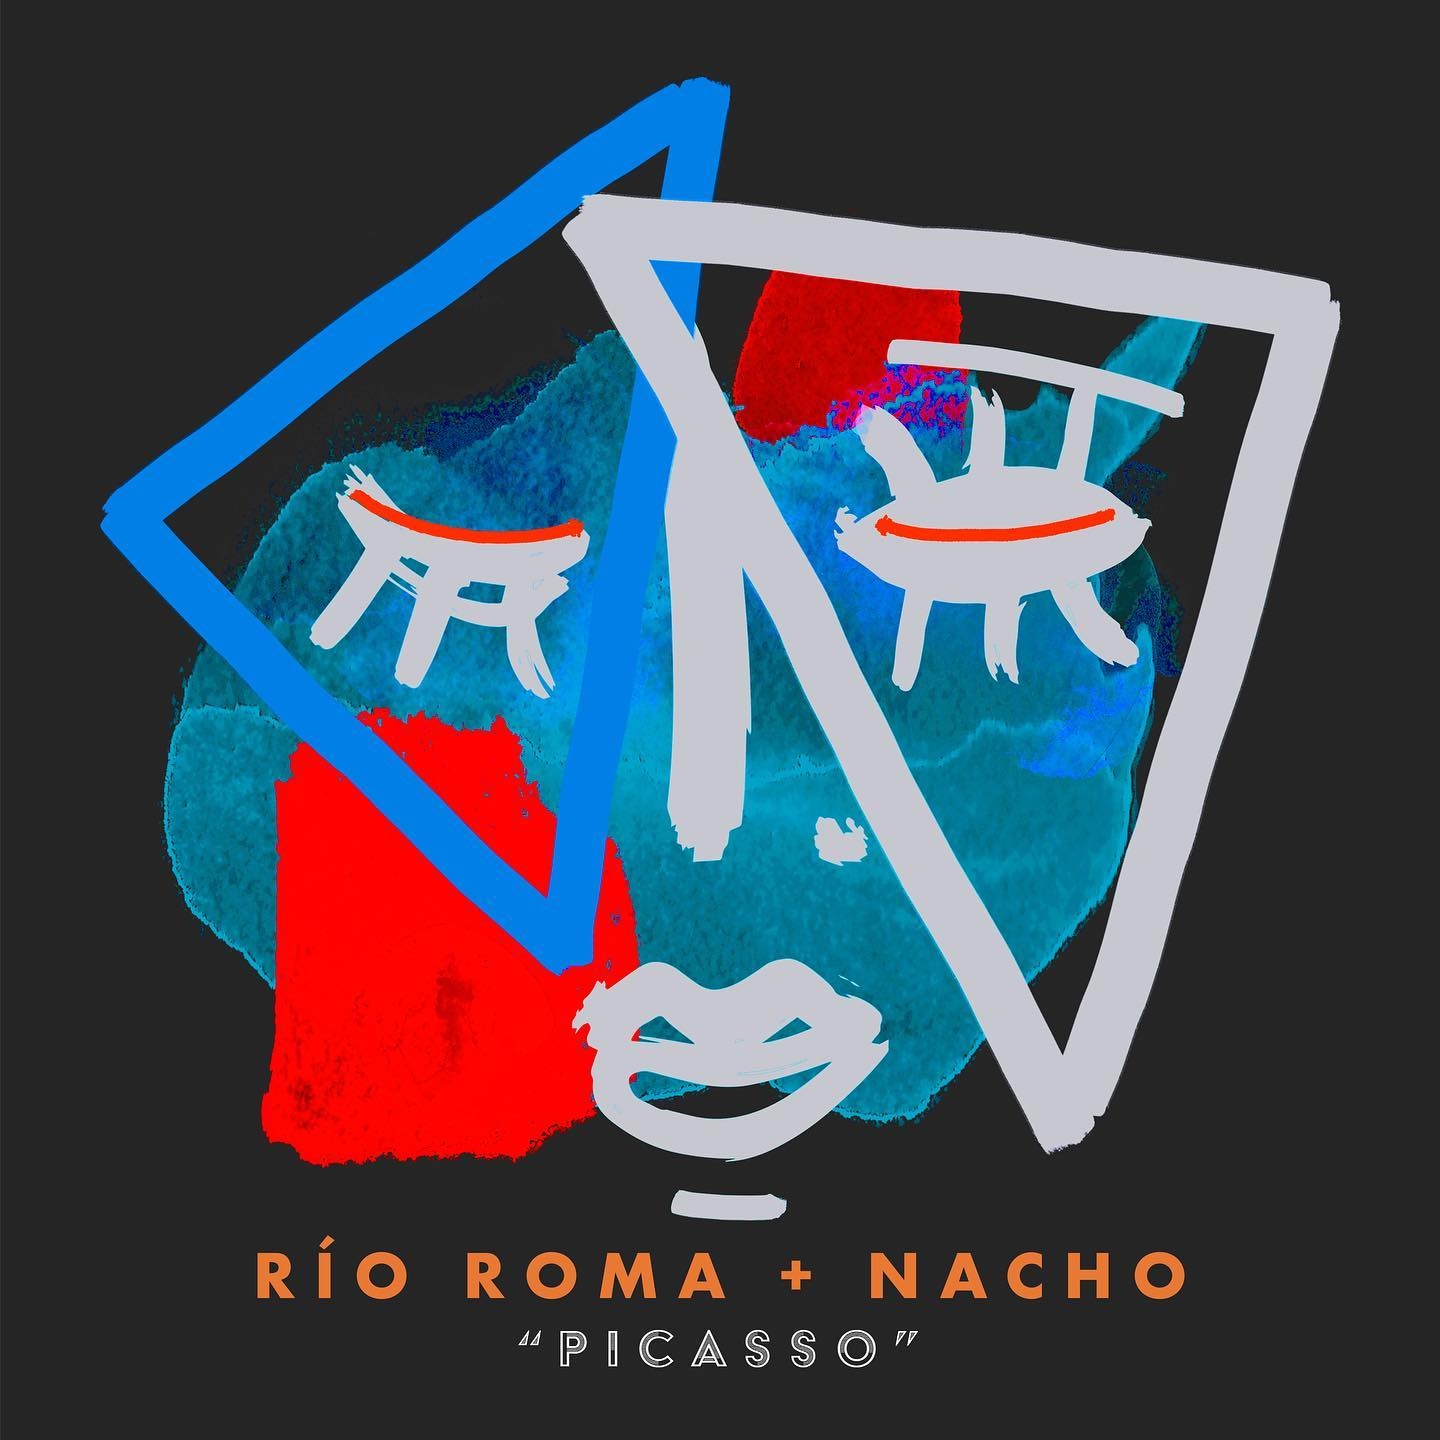 Río Roma lanzan “Picasso” en colaboración con el venezolano Nacho (Chino & Nacho)